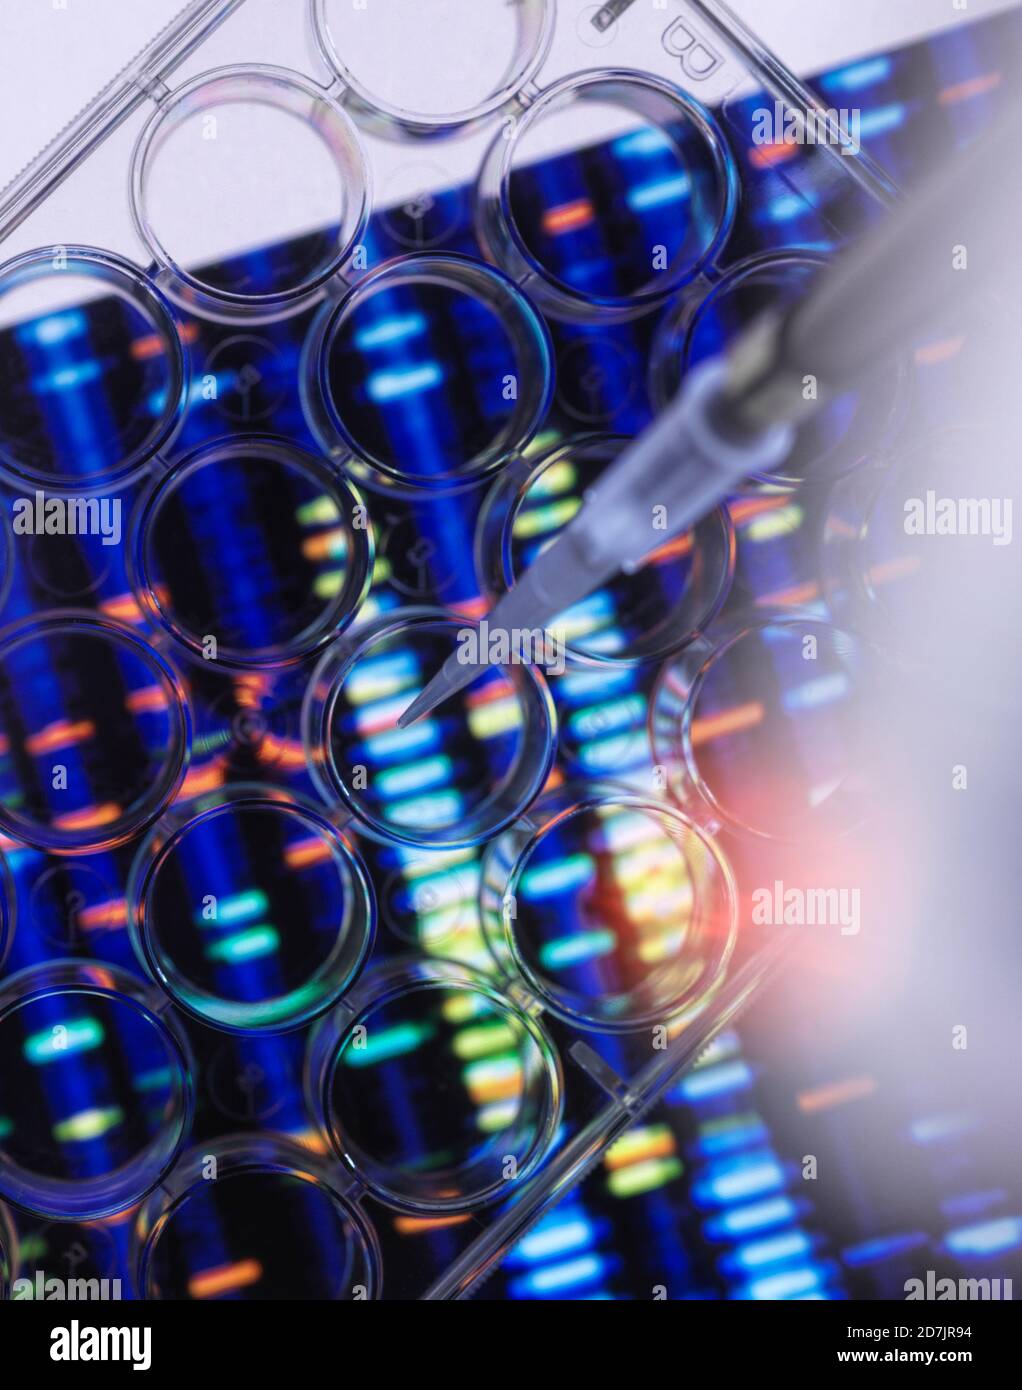 Wissenschaftliche Forschung auf Multi-Well-Platte für DNA-Analyse mit Genetische Ergebnisse im Hintergrund Stockfoto